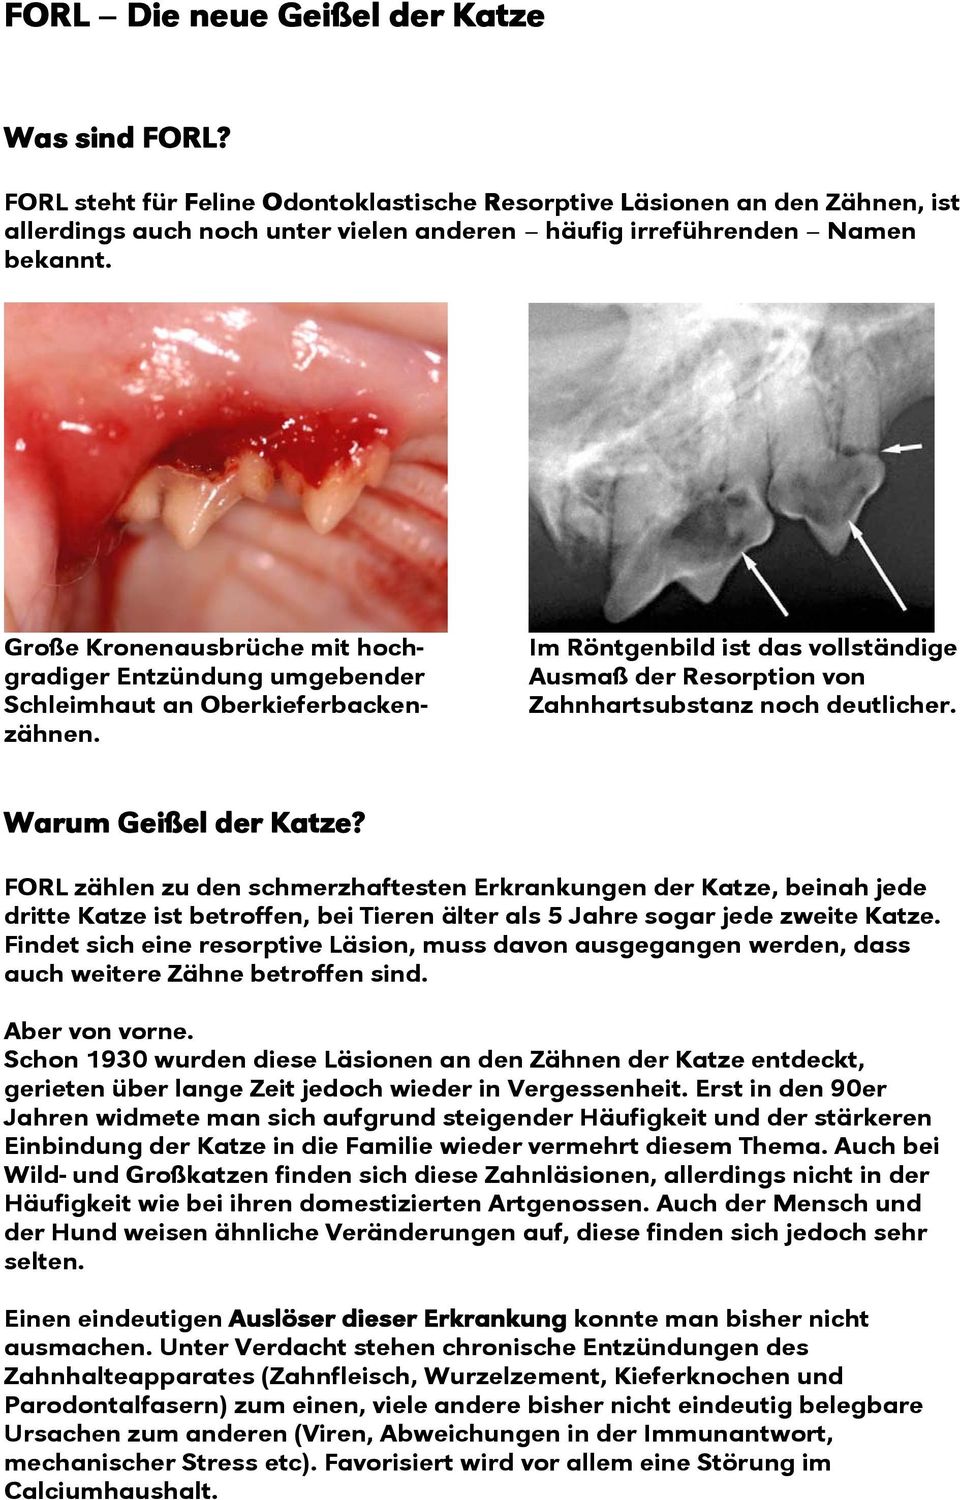 Große Kronenausbrüche mit hochgradiger Entzündung umgebender Schleimhaut an Oberkieferbackenzähnen. Im Röntgenbild ist das vollständige Ausmaß der Resorption von Zahnhartsubstanz noch deutlicher.